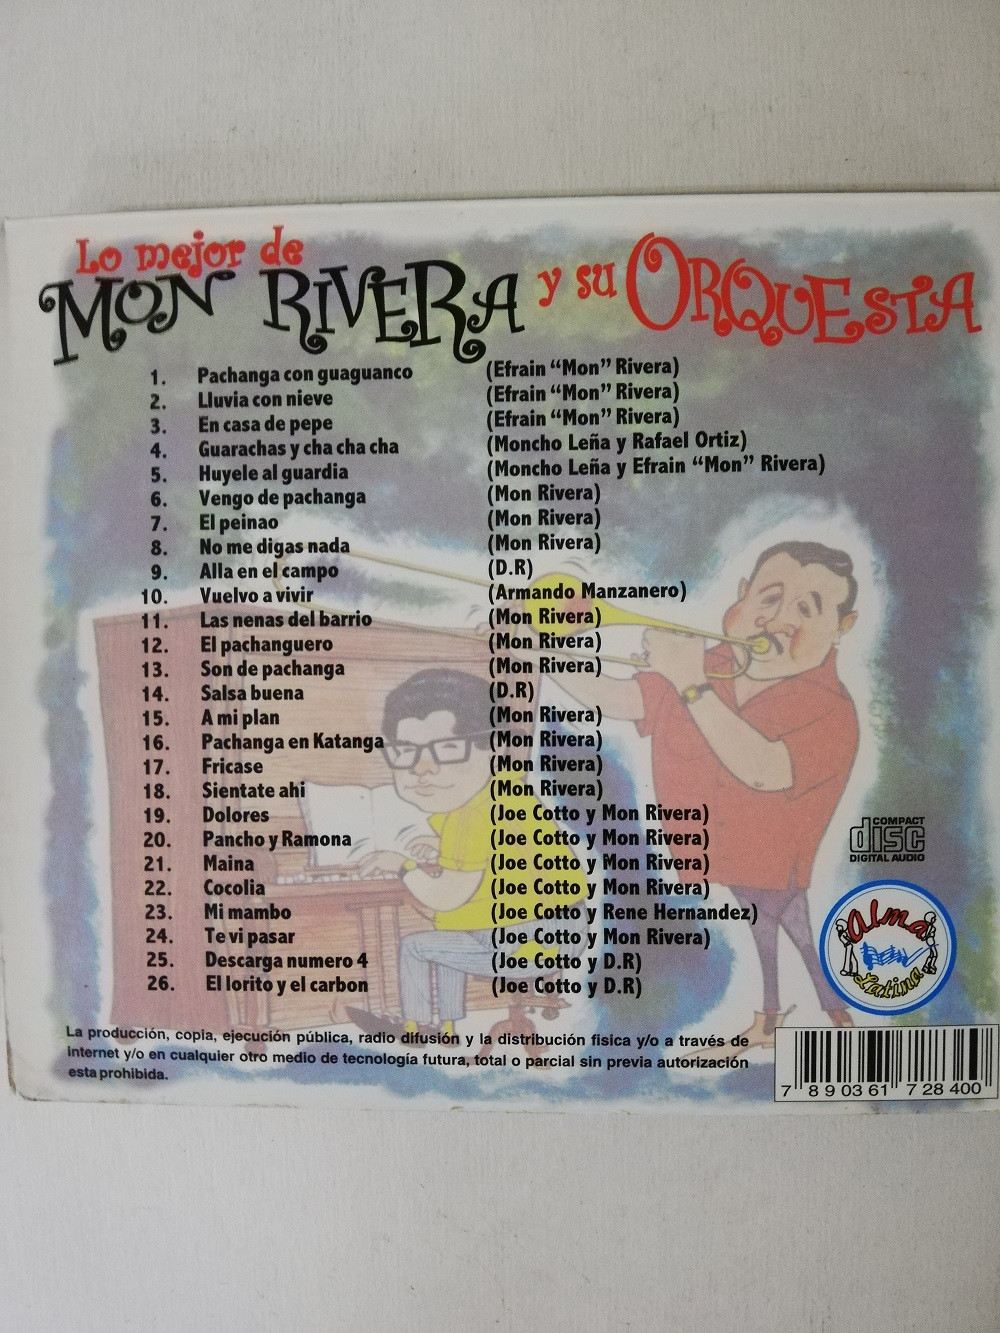 Imagen CD MON RIVERA Y SU ORQUESTA - LO MEJOR DE MON RIVERA Y SU ORQUESTA 2